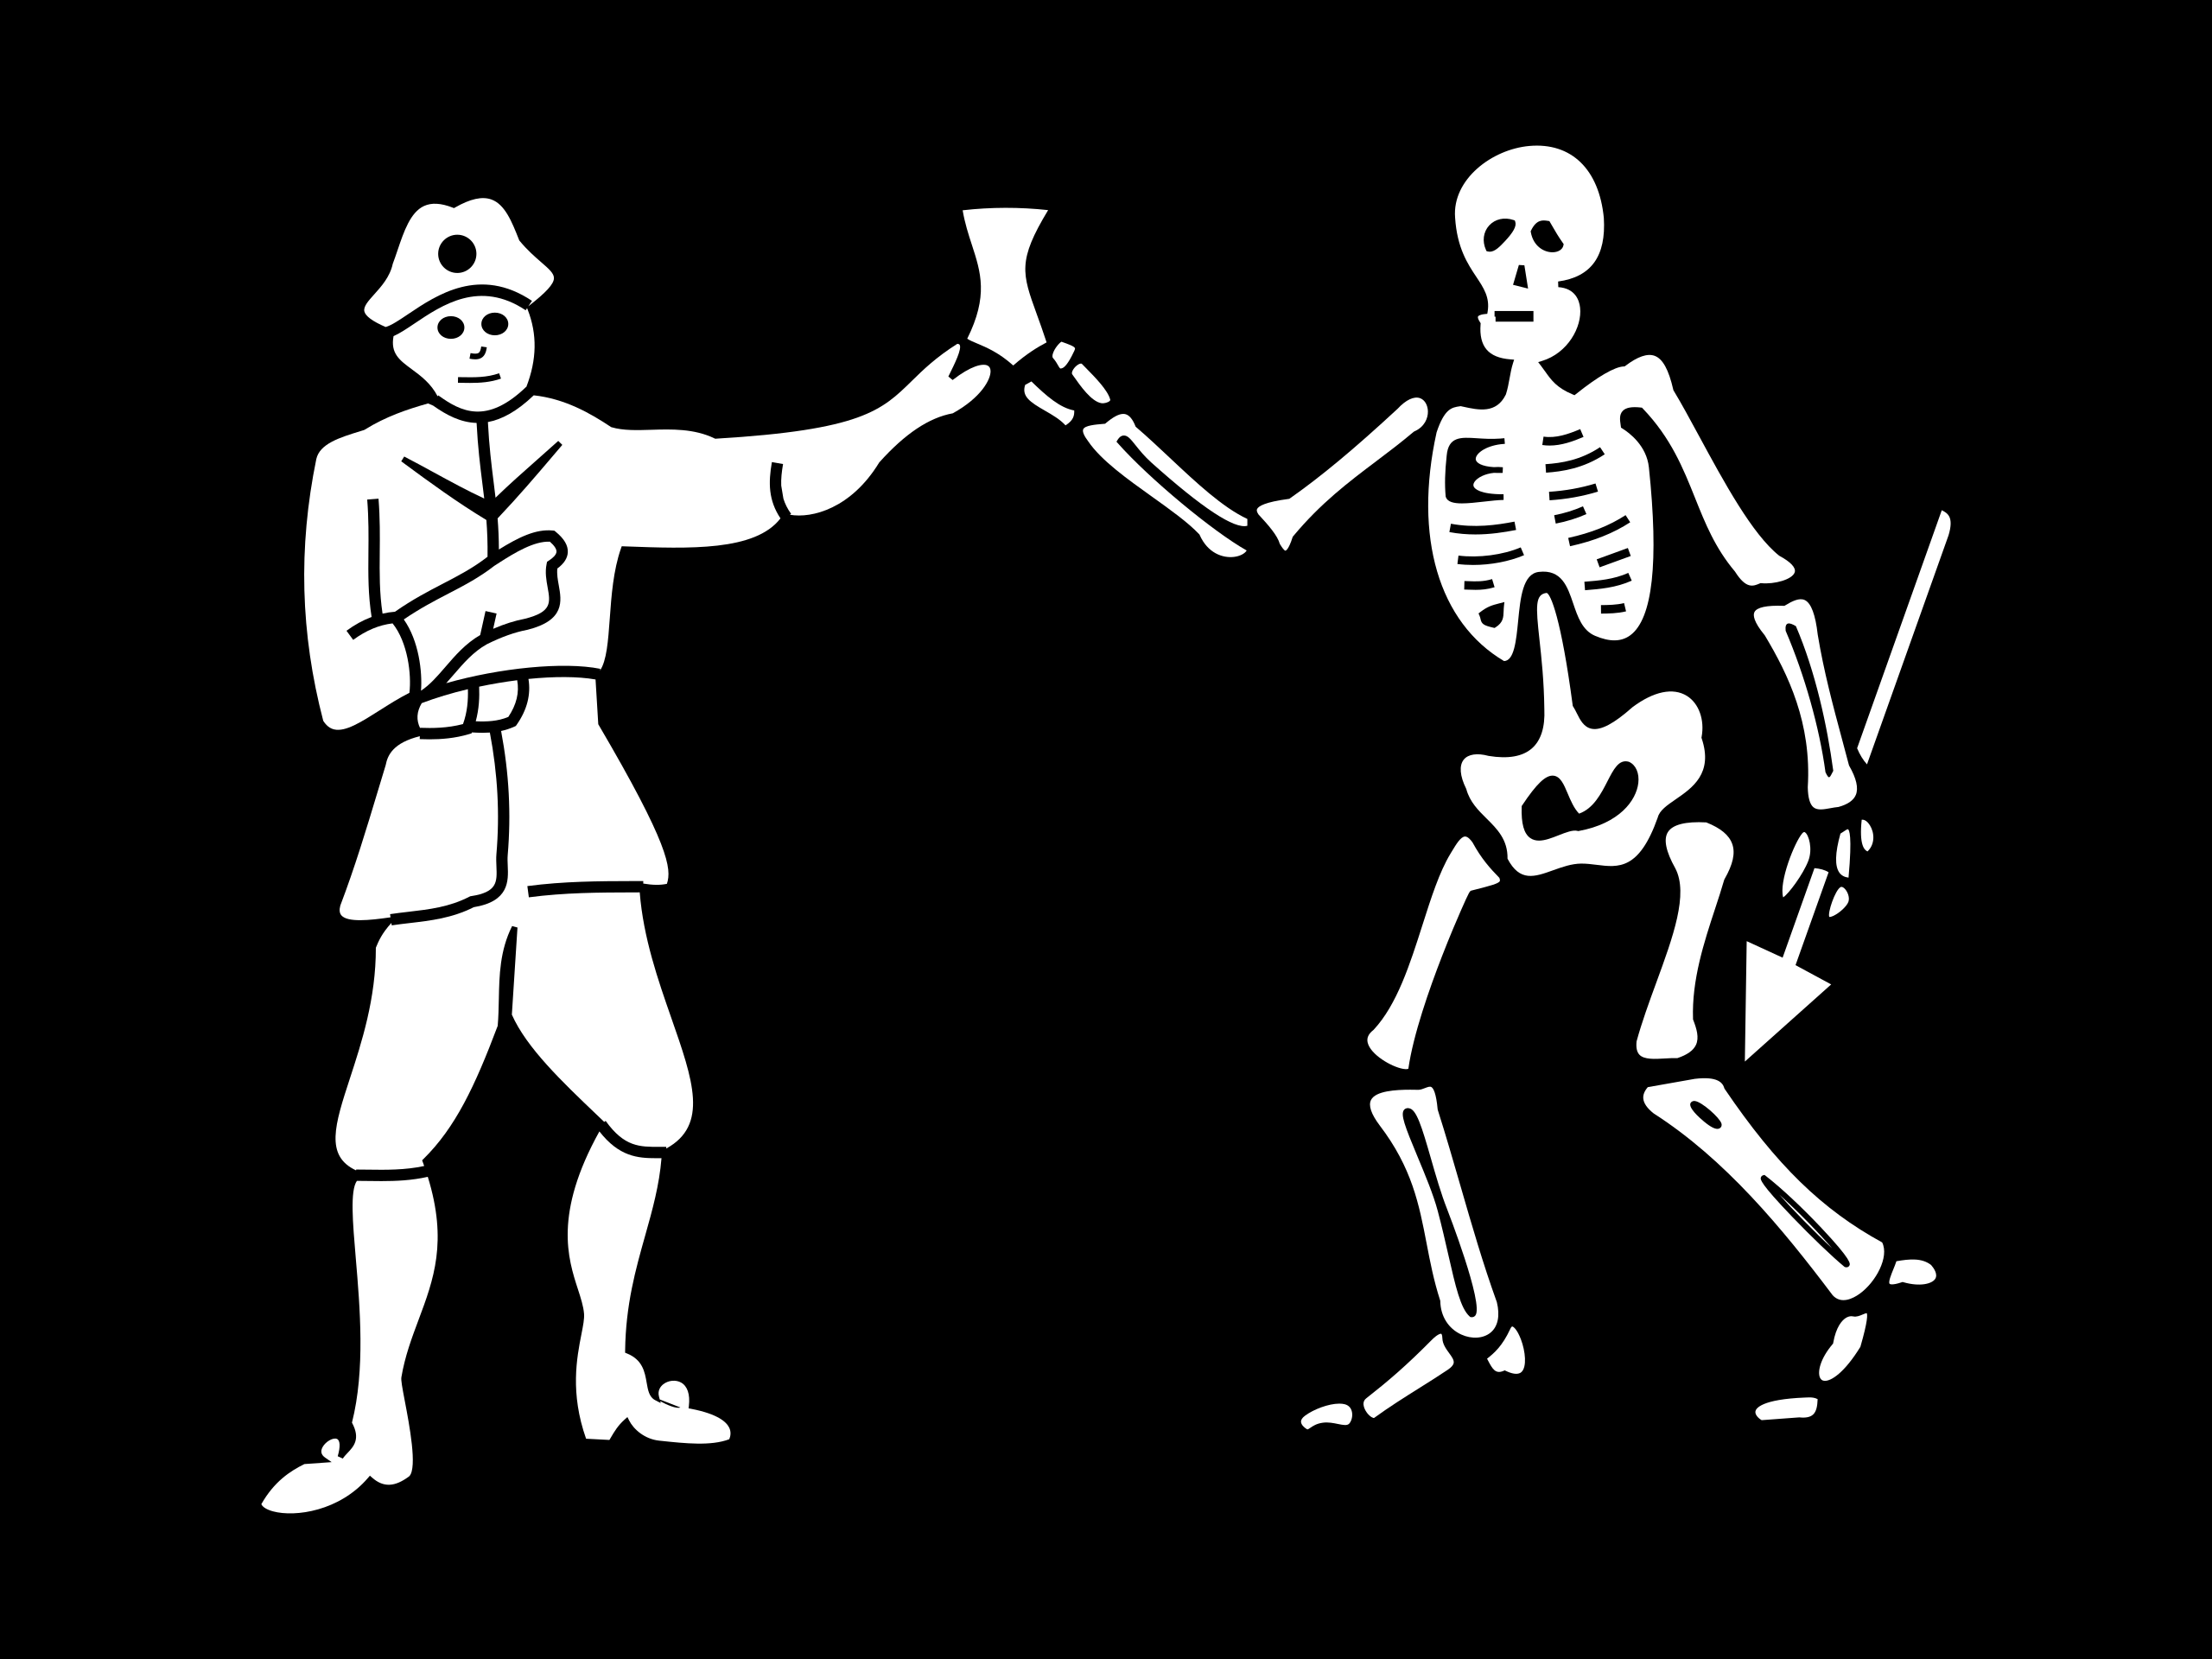 Pirates Flag Skull And Bones 2560x1920